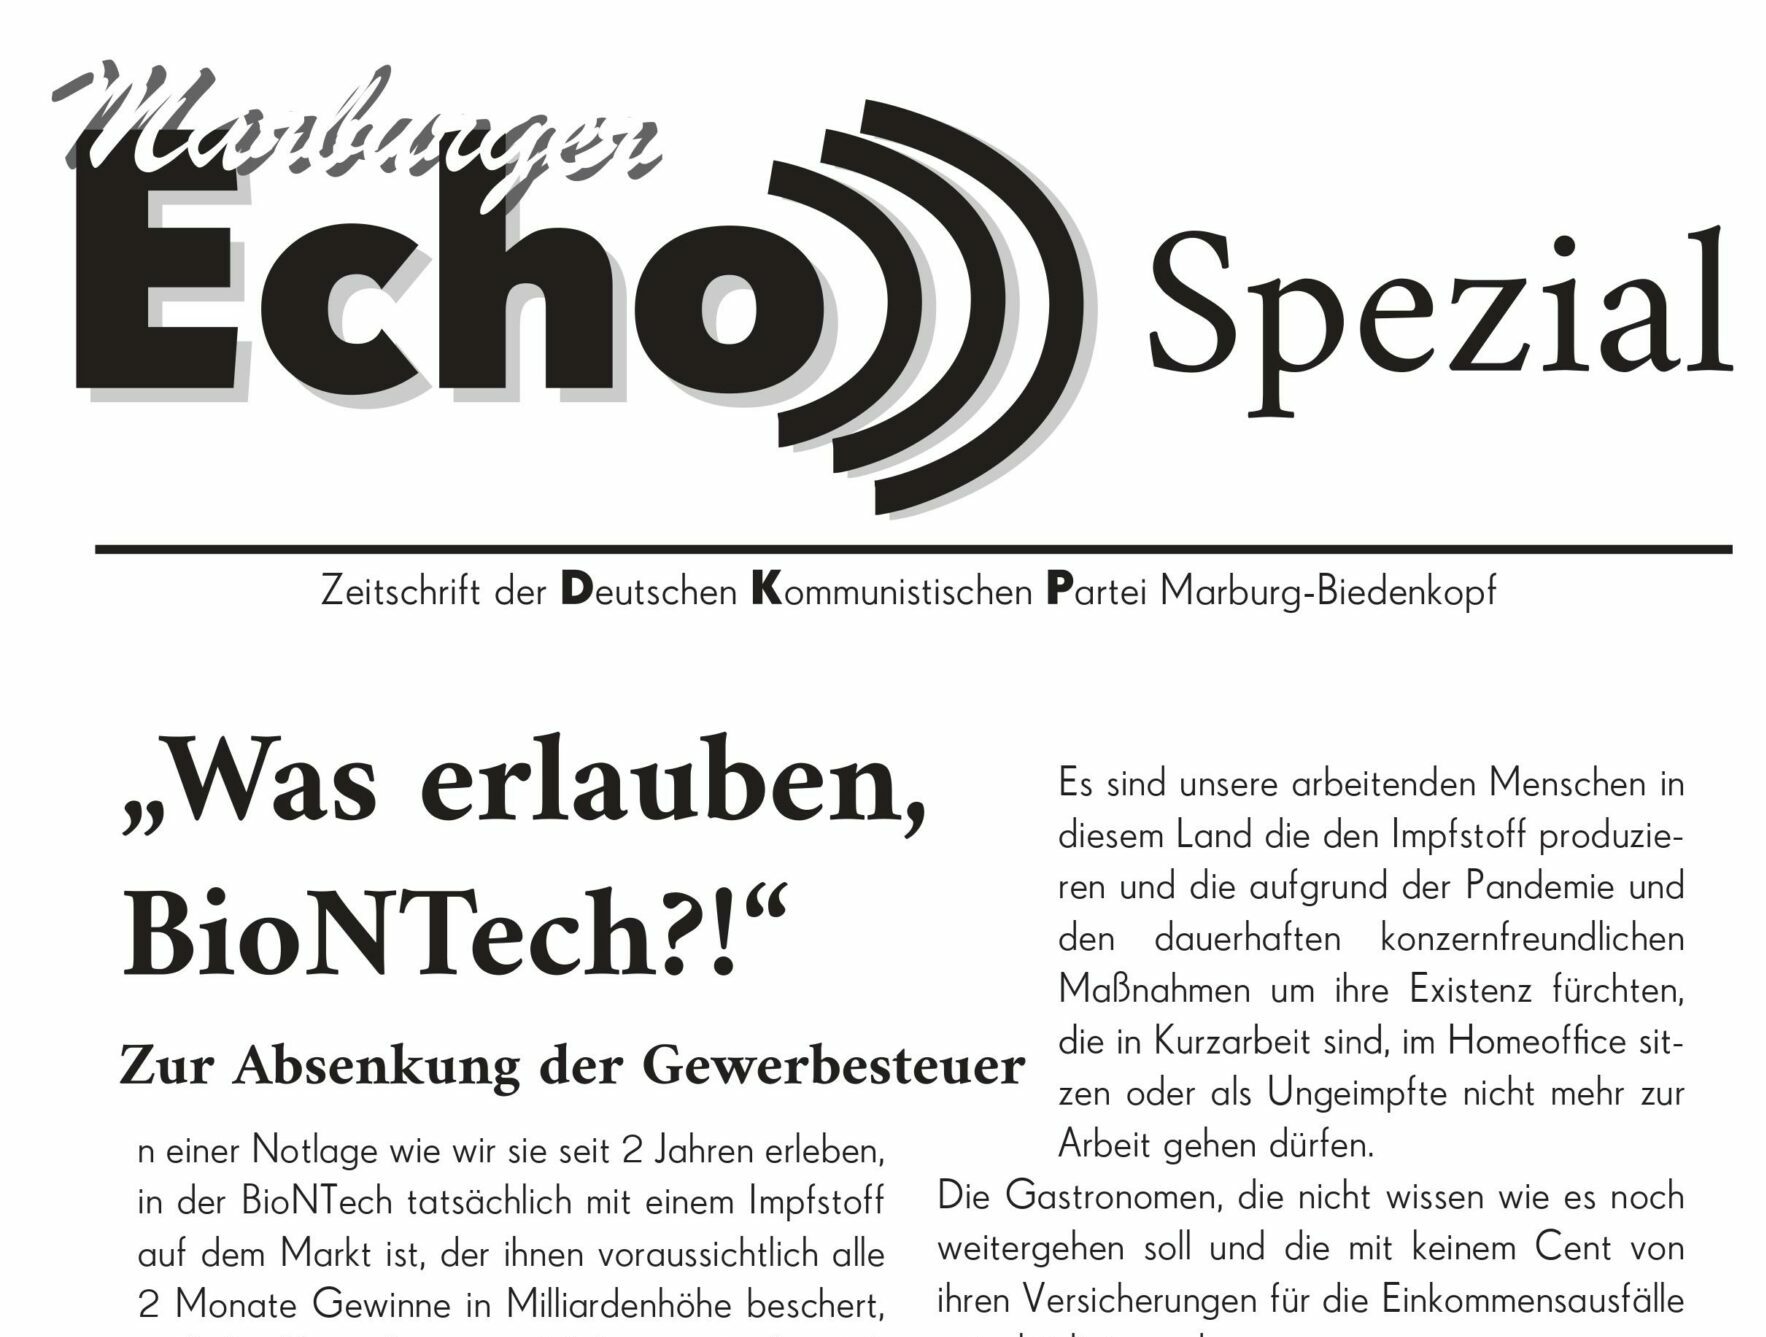 Marburger Echo Spezial – Was erlauben biontech?